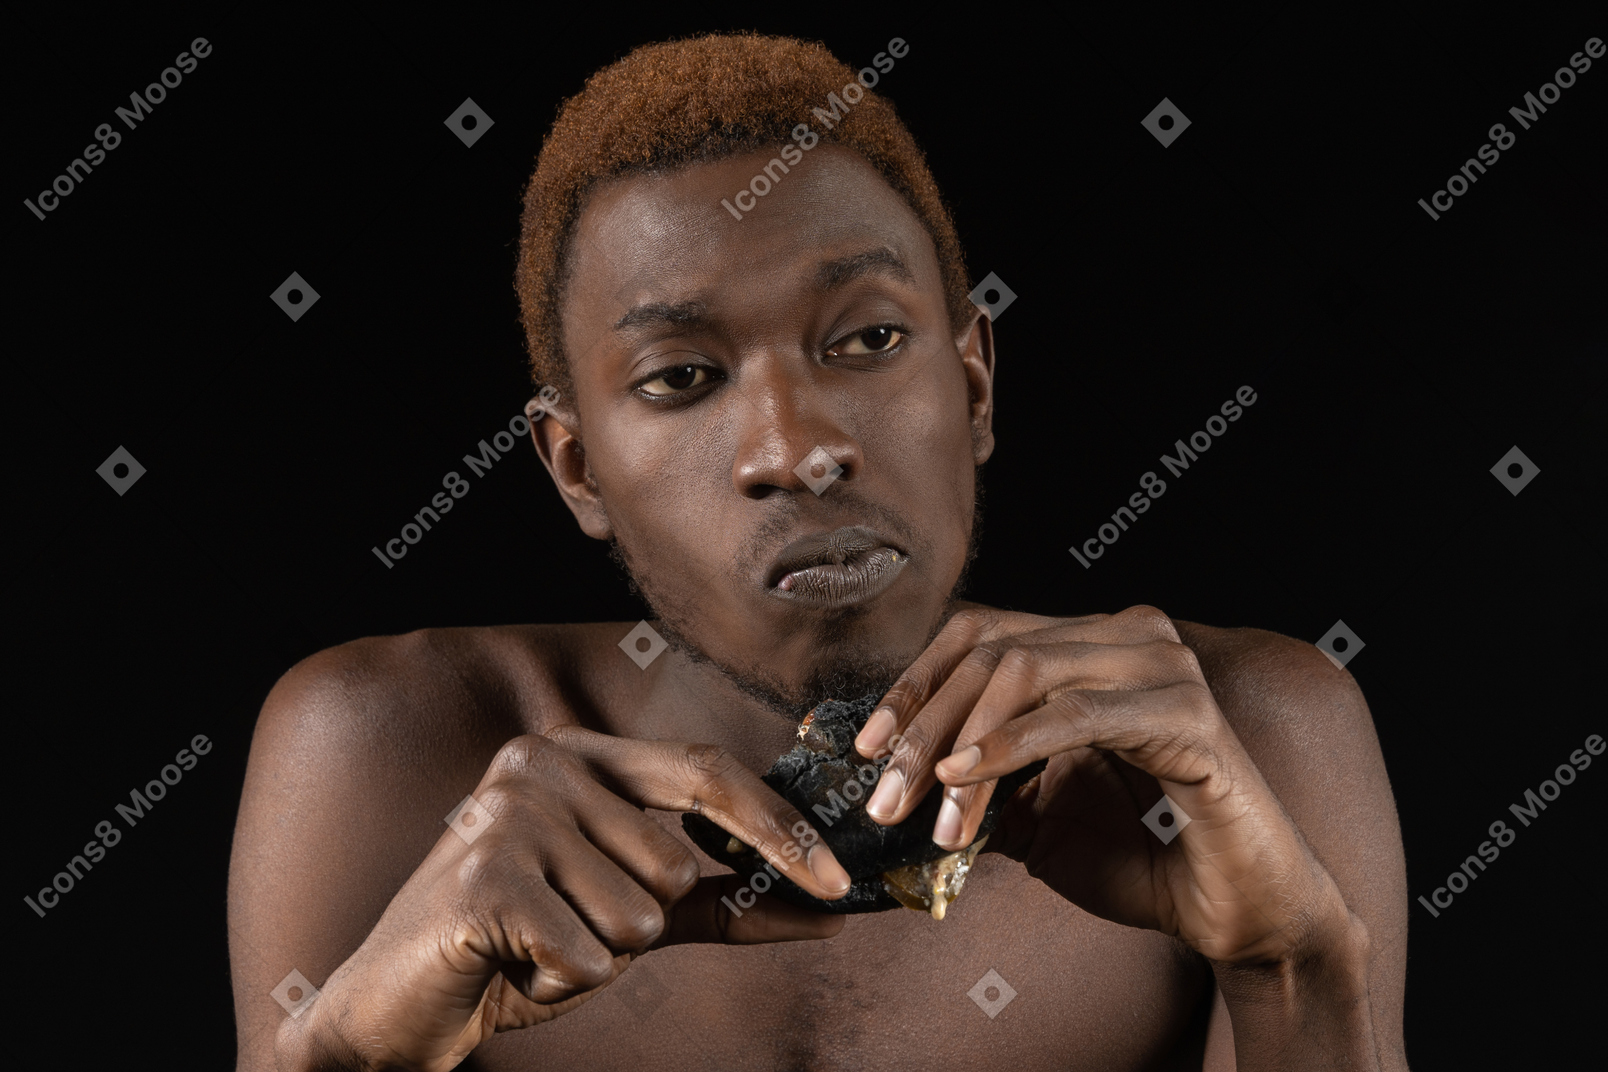 Vista frontal de un hombre afro joven pensativo comiendo una hamburguesa